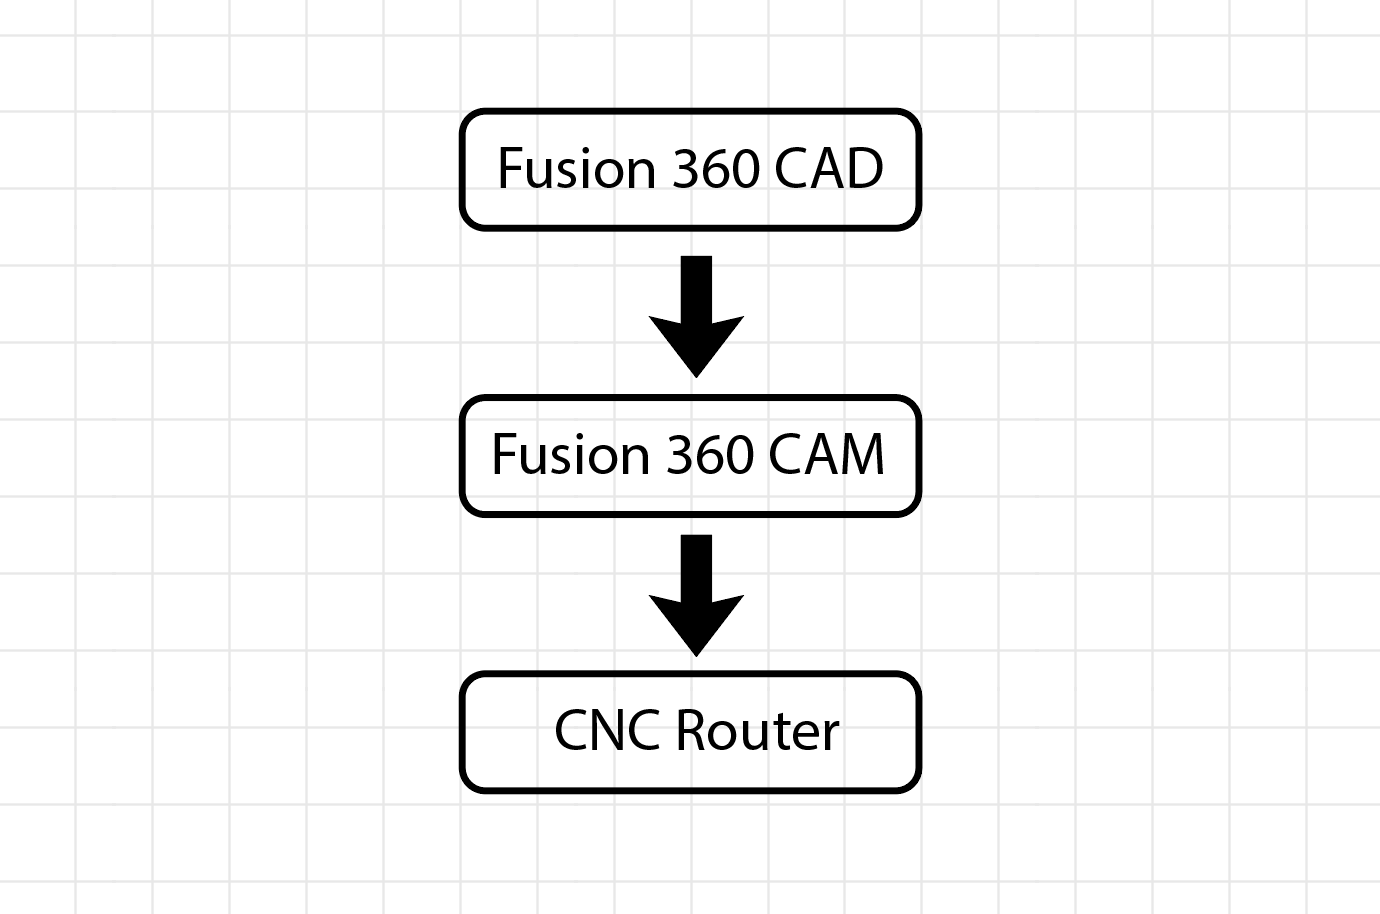 CNC Router